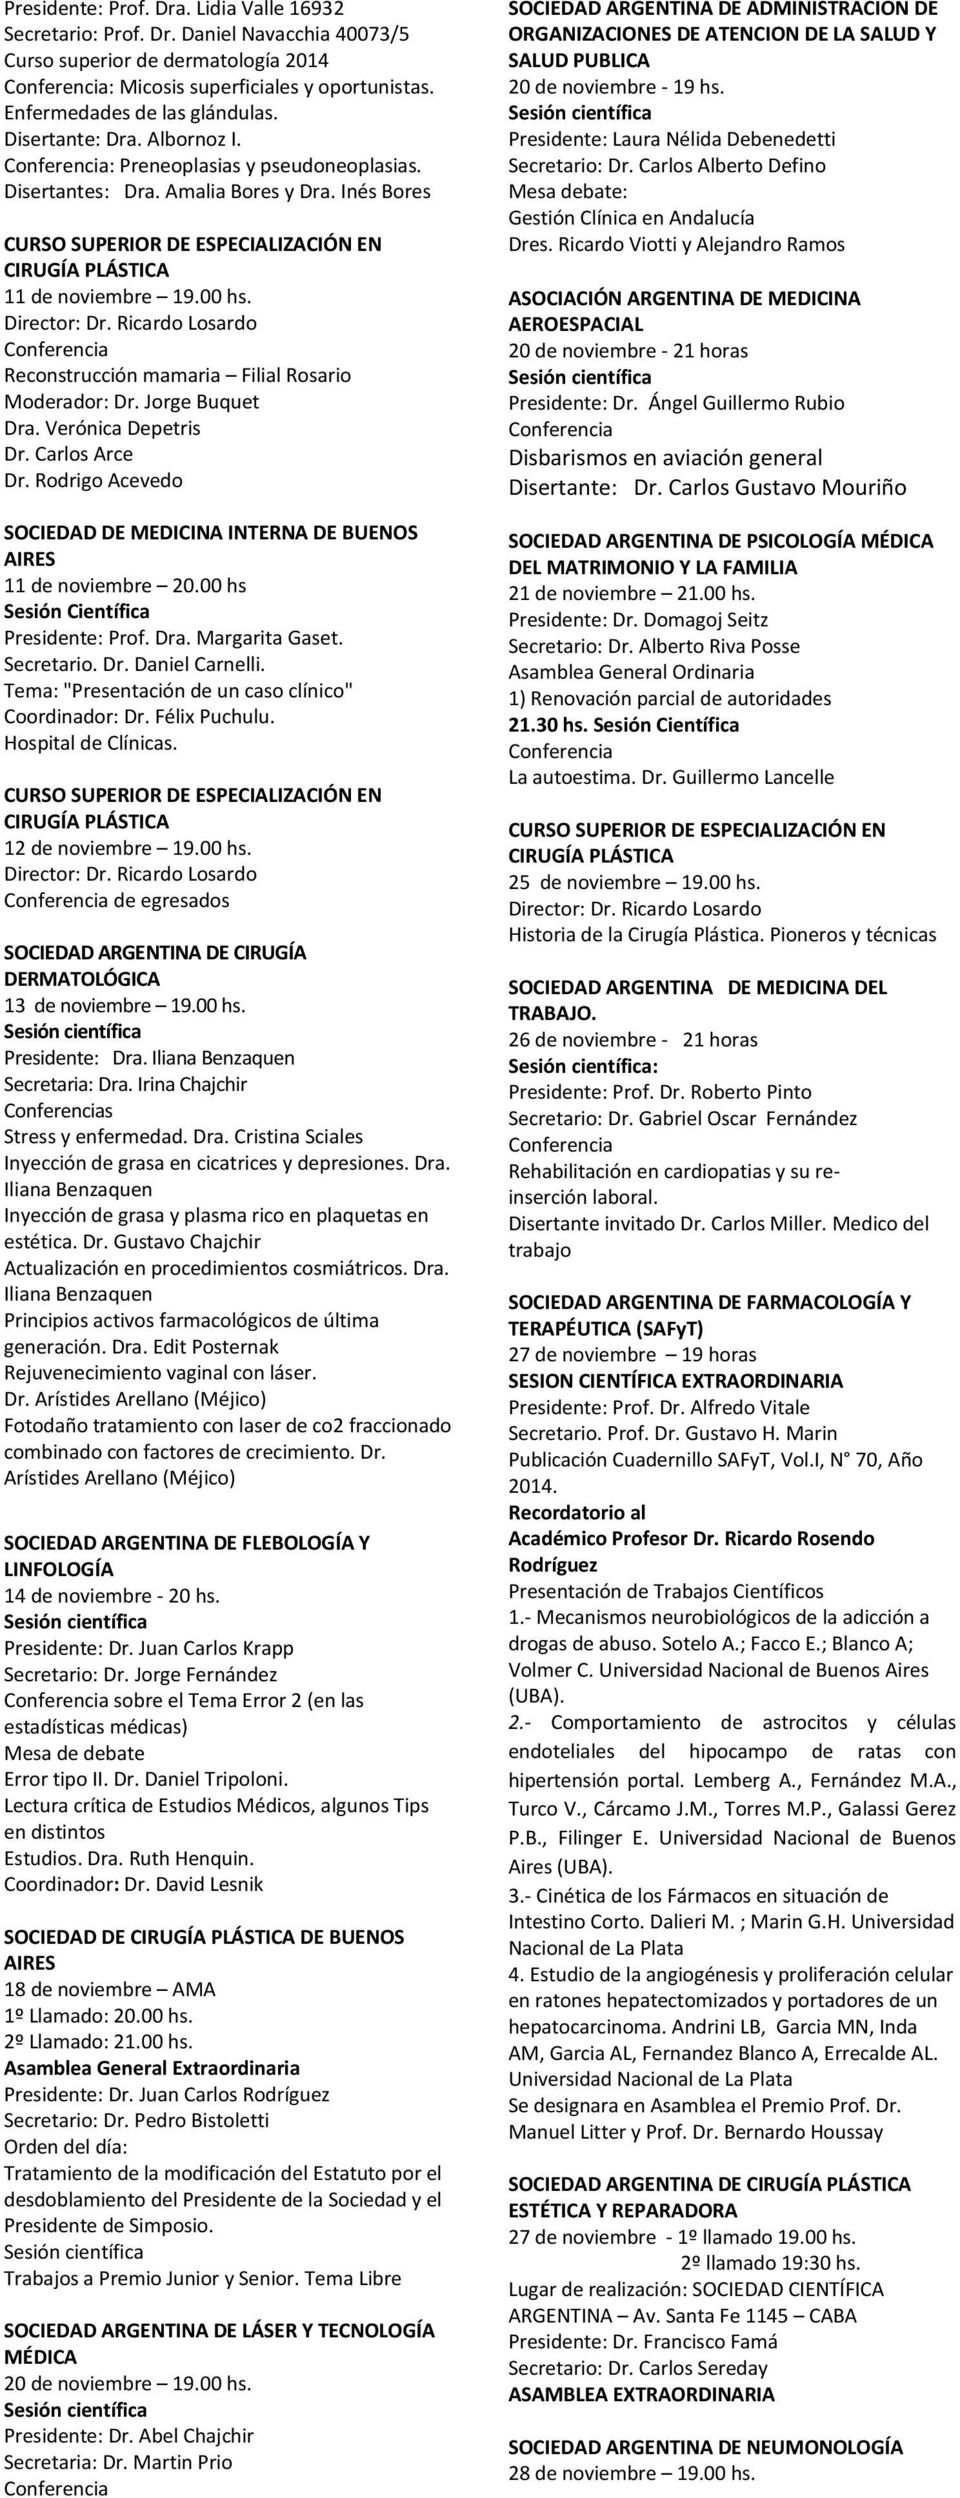 Director: Dr. Ricardo Losardo Reconstrucción mamaria Filial Rosario Moderador: Dr. Jorge Buquet Dra. Verónica Depetris Dr. Carlos Arce Dr.